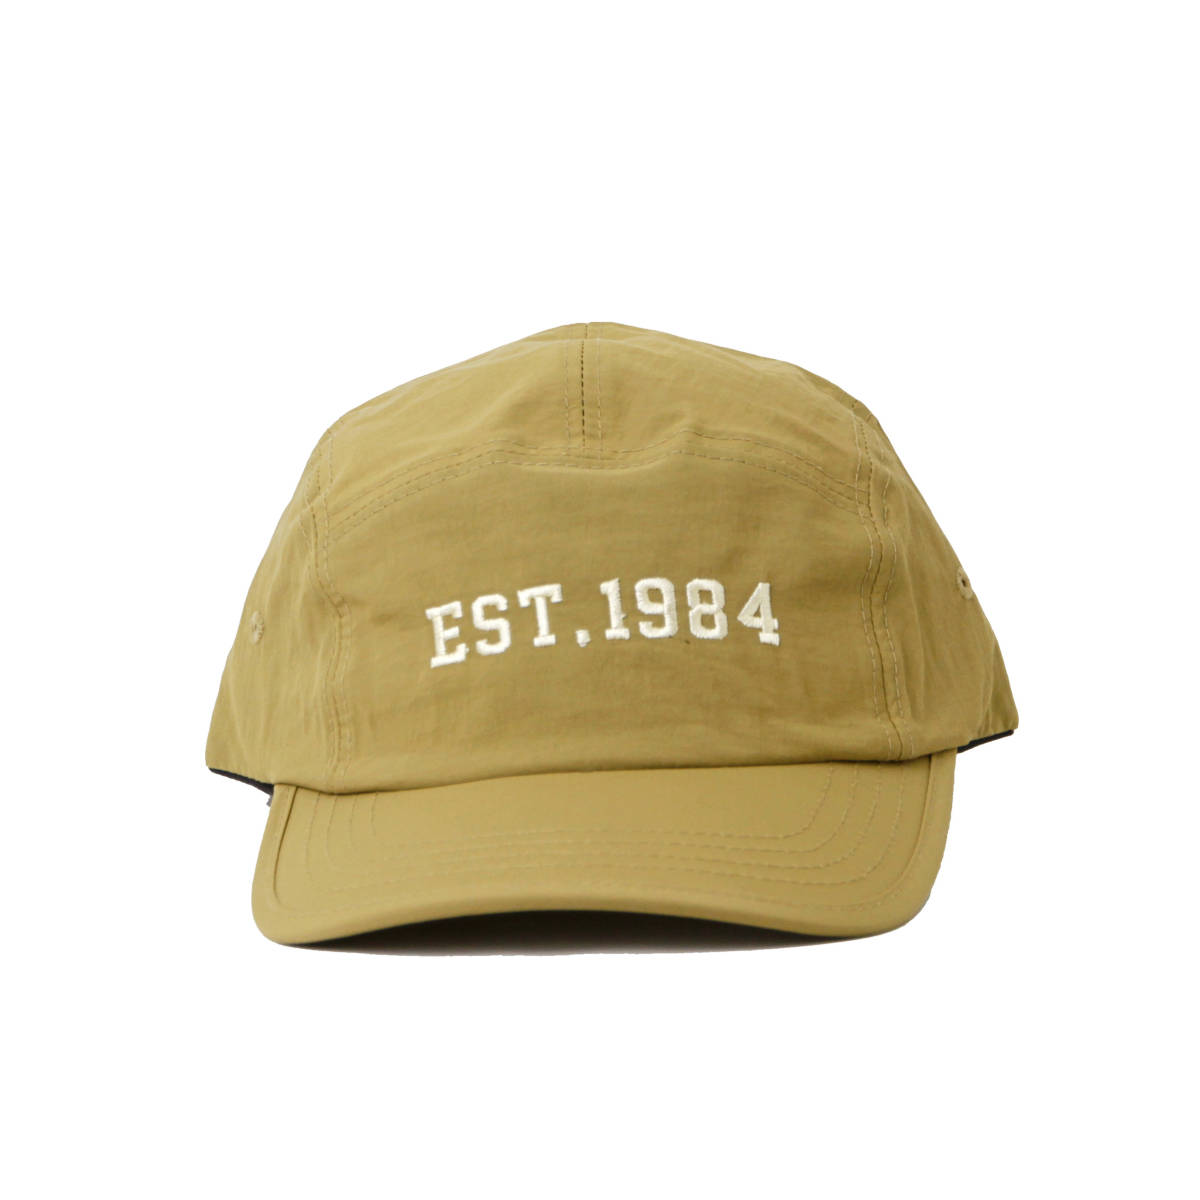 ナイロン ジェット キャップ [ EST1984 ] カーキ / レディース 帽子 ツバ広 小顔効果 UV 紫外線対策 おしゃれ ゴルフ ランニング 涼しい 